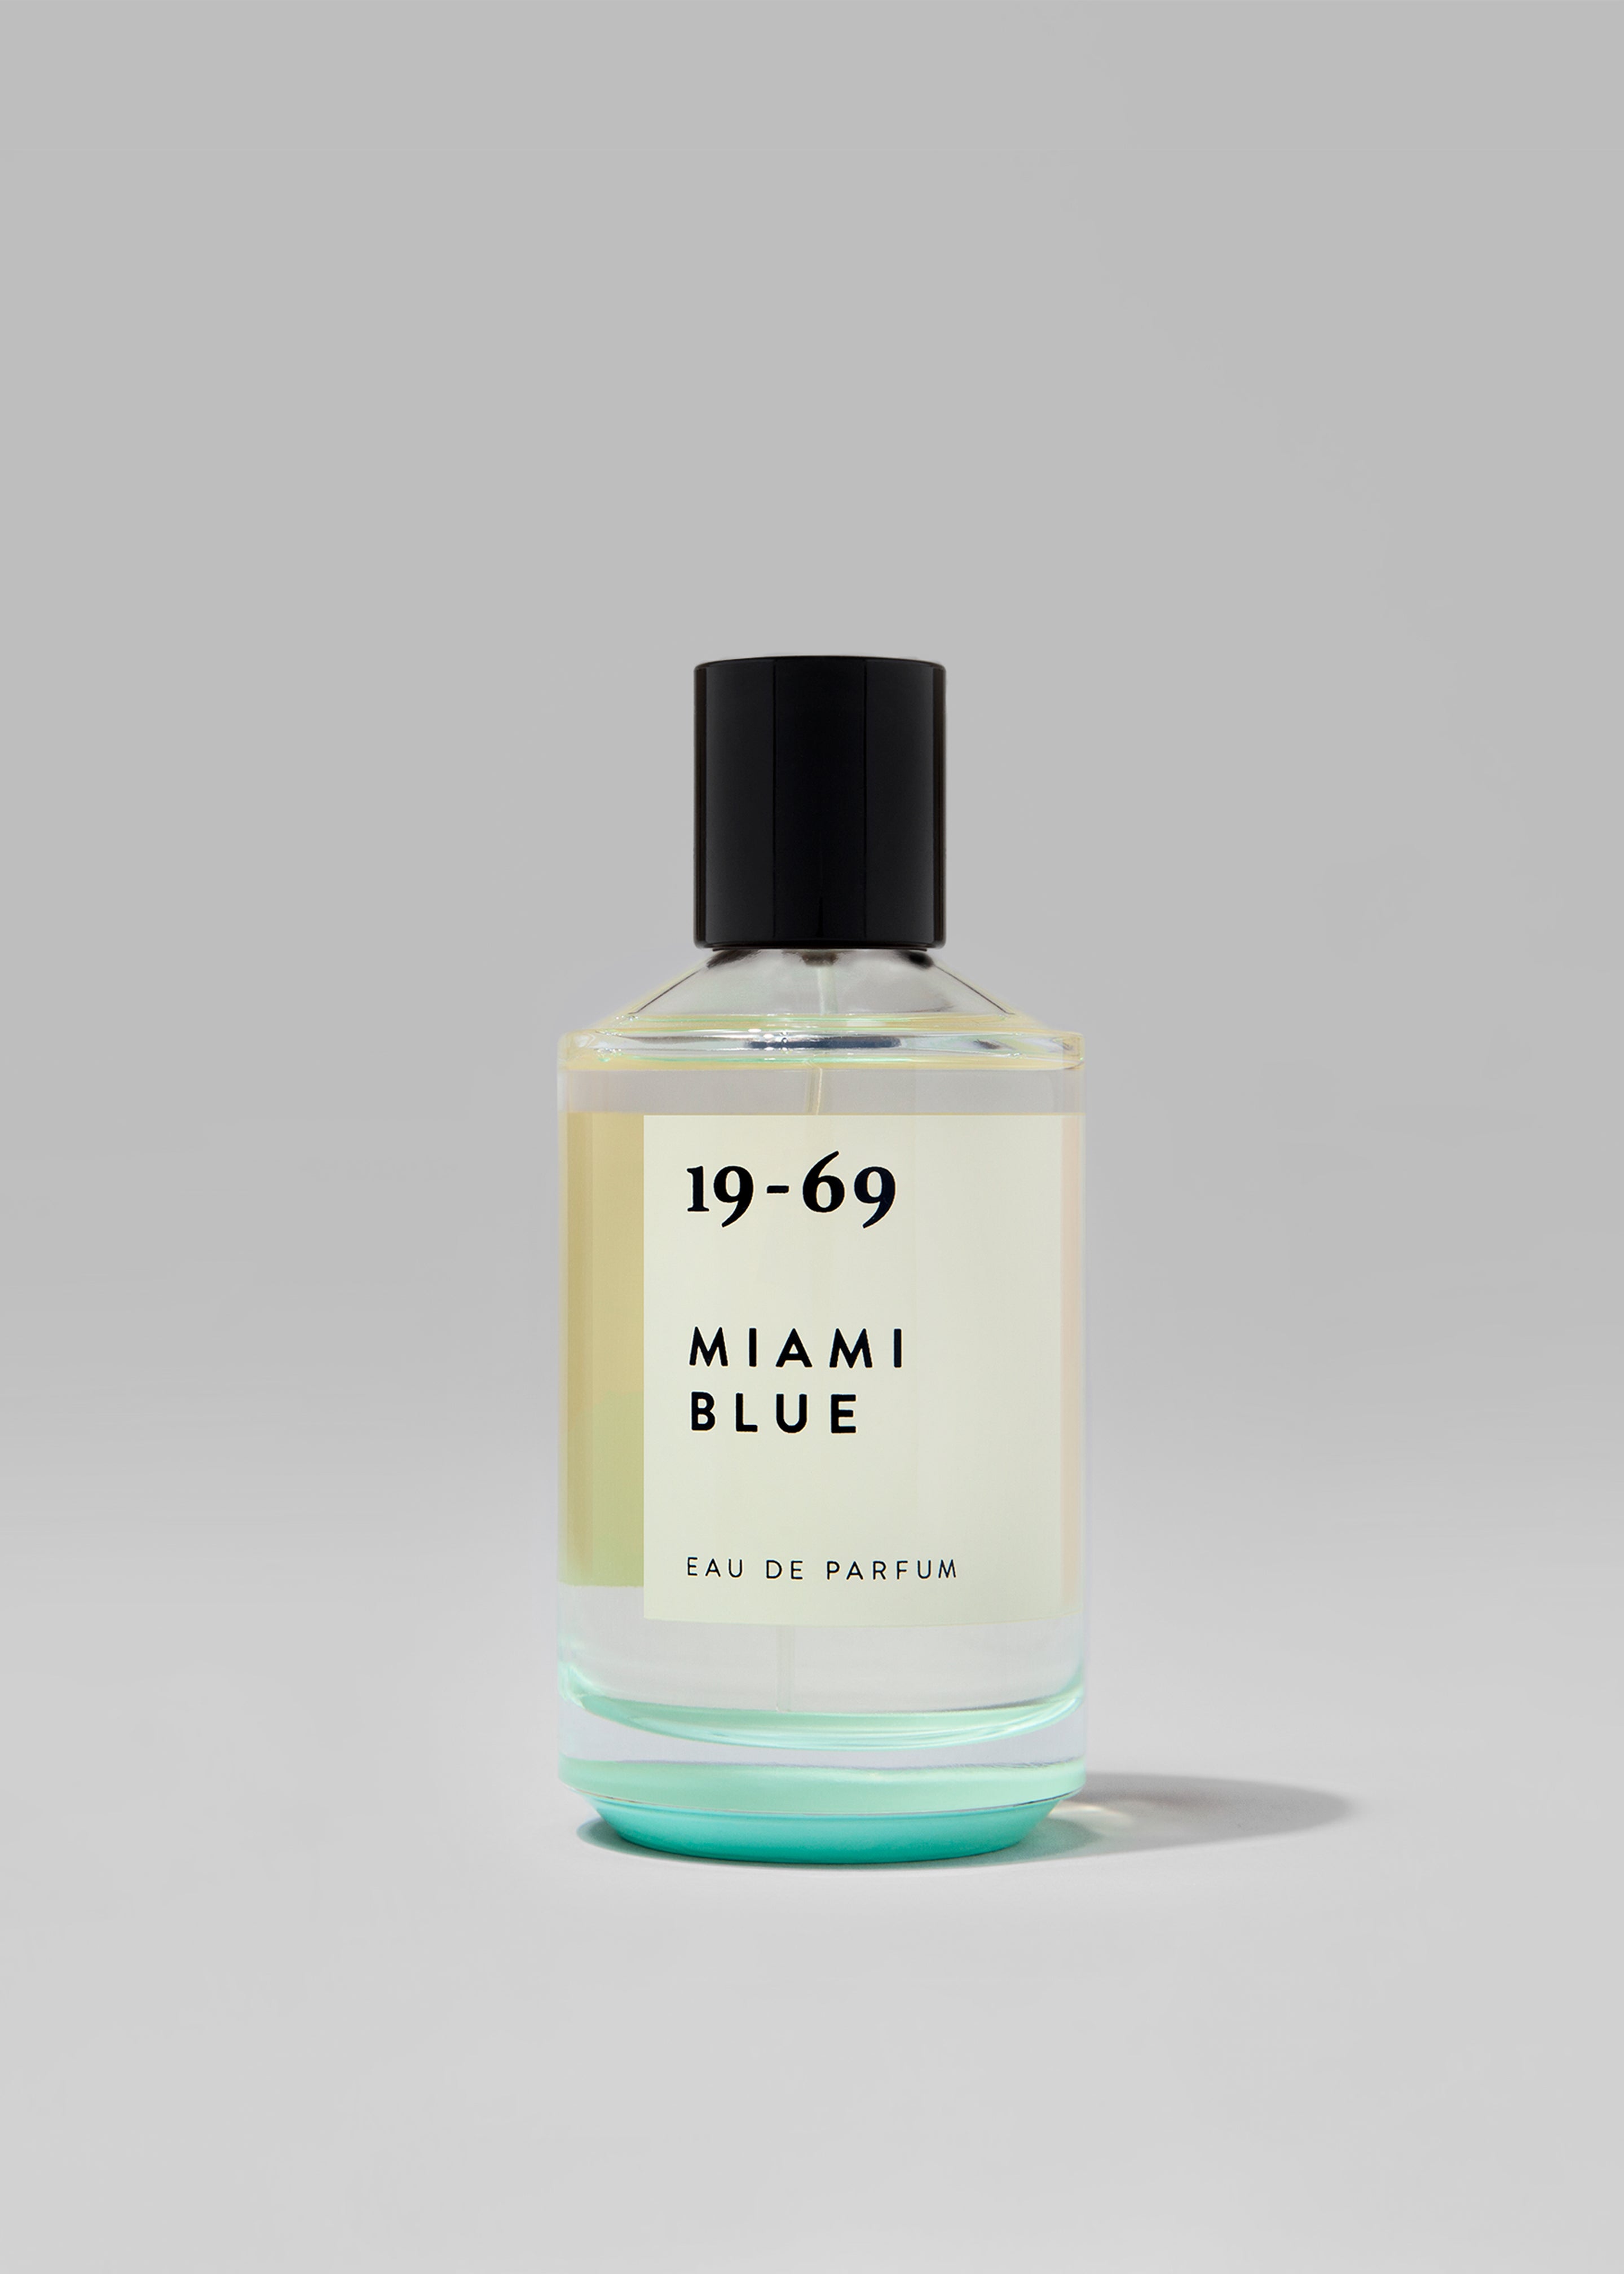 19-69 Miami Blue Eau de Parfum - 1